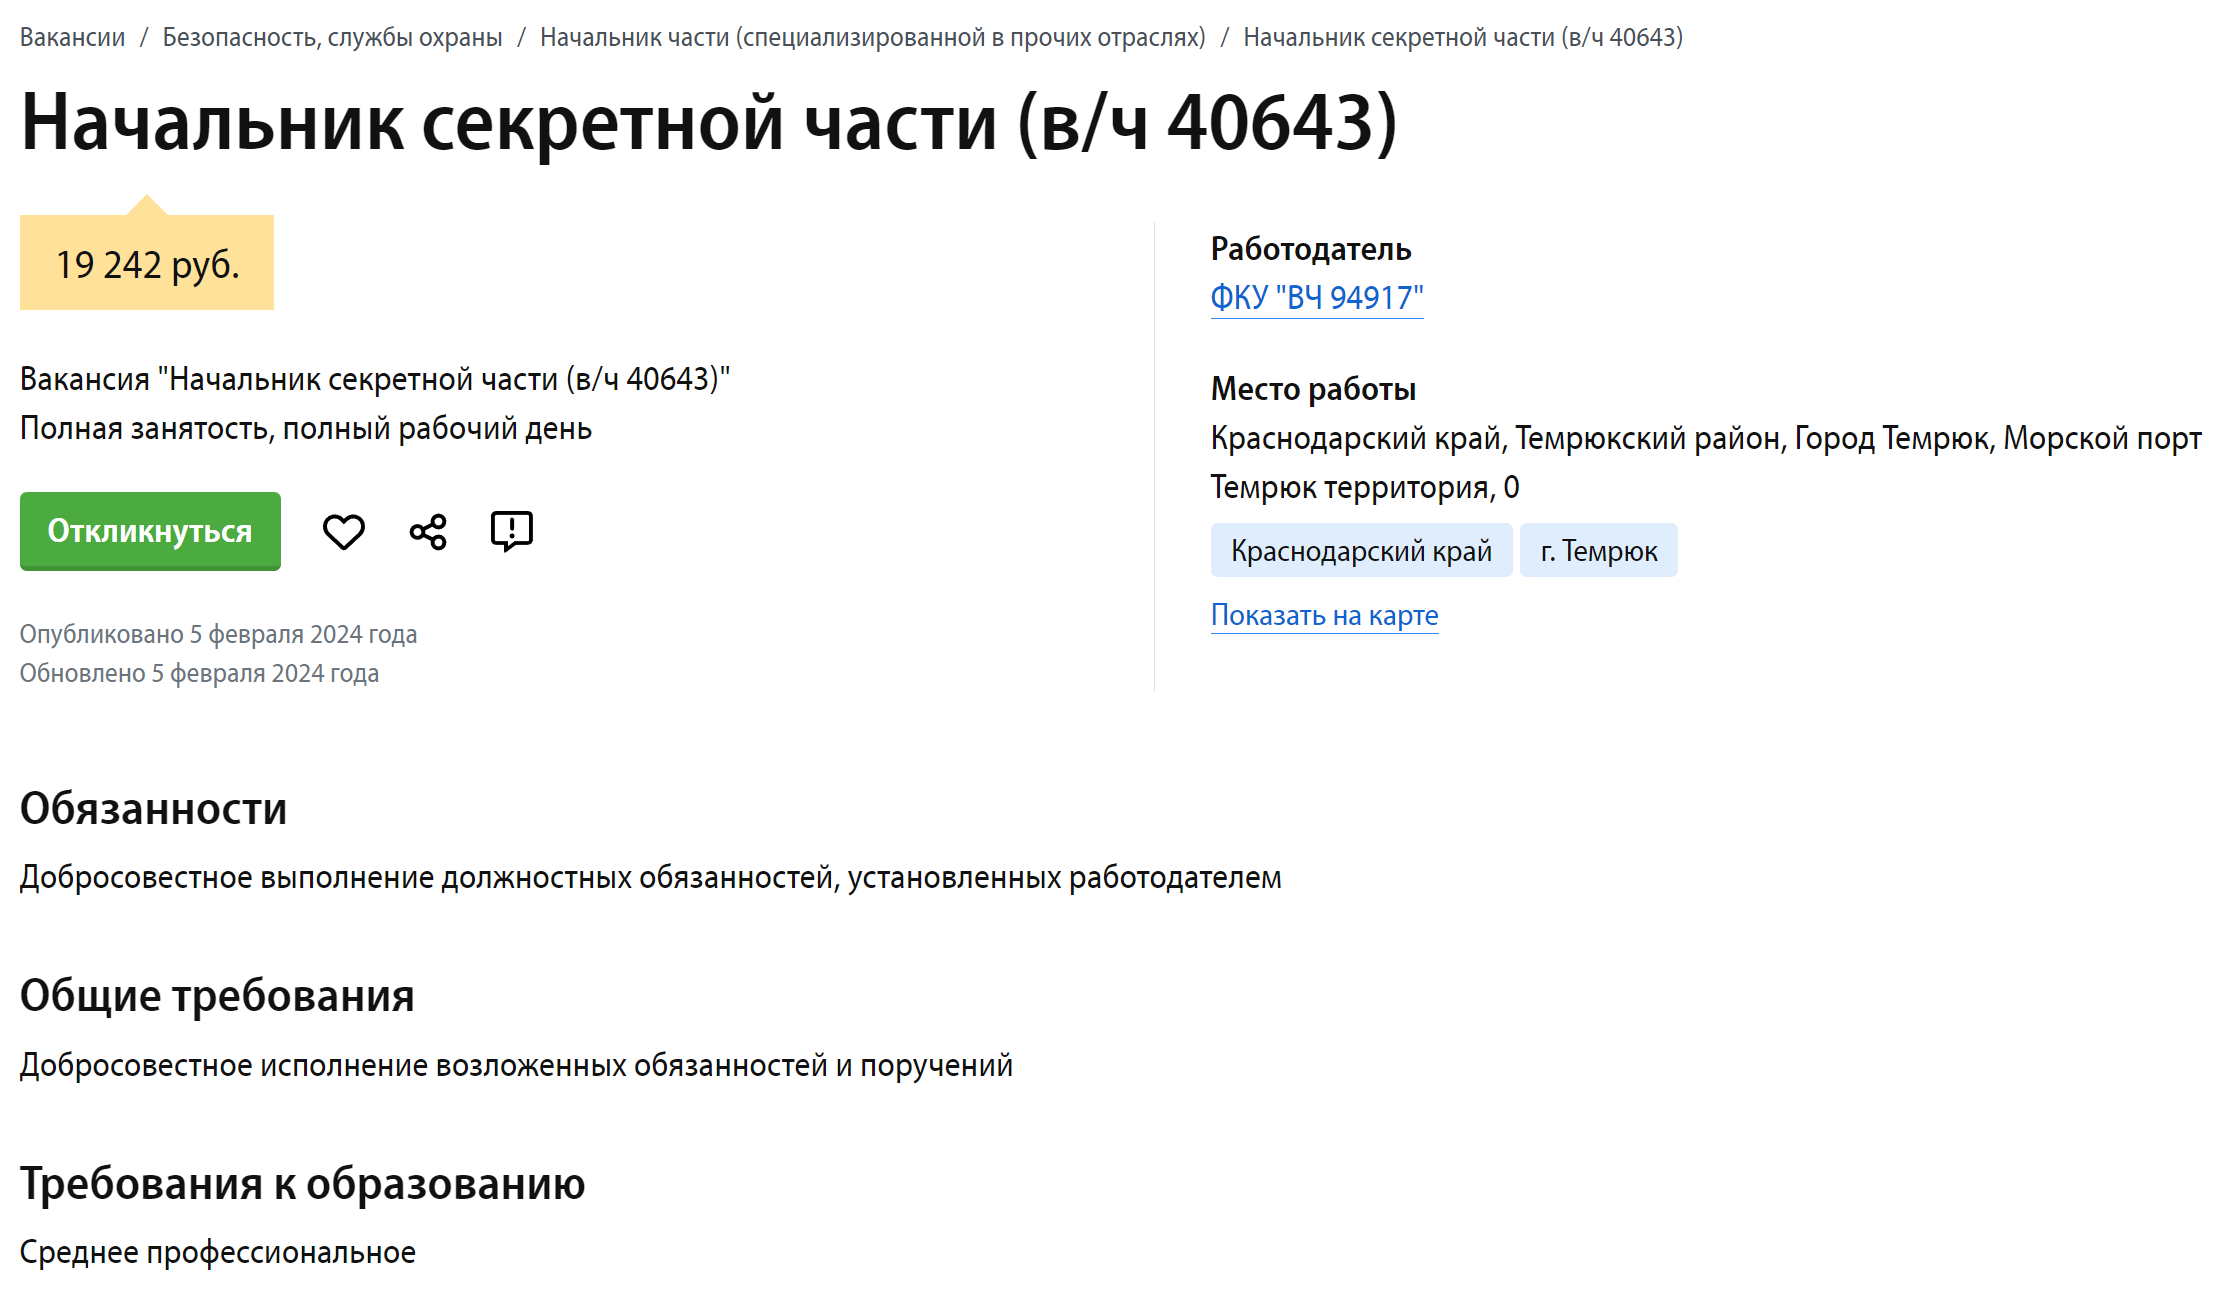 Скриншот вакансии с сайта jobsense.ru